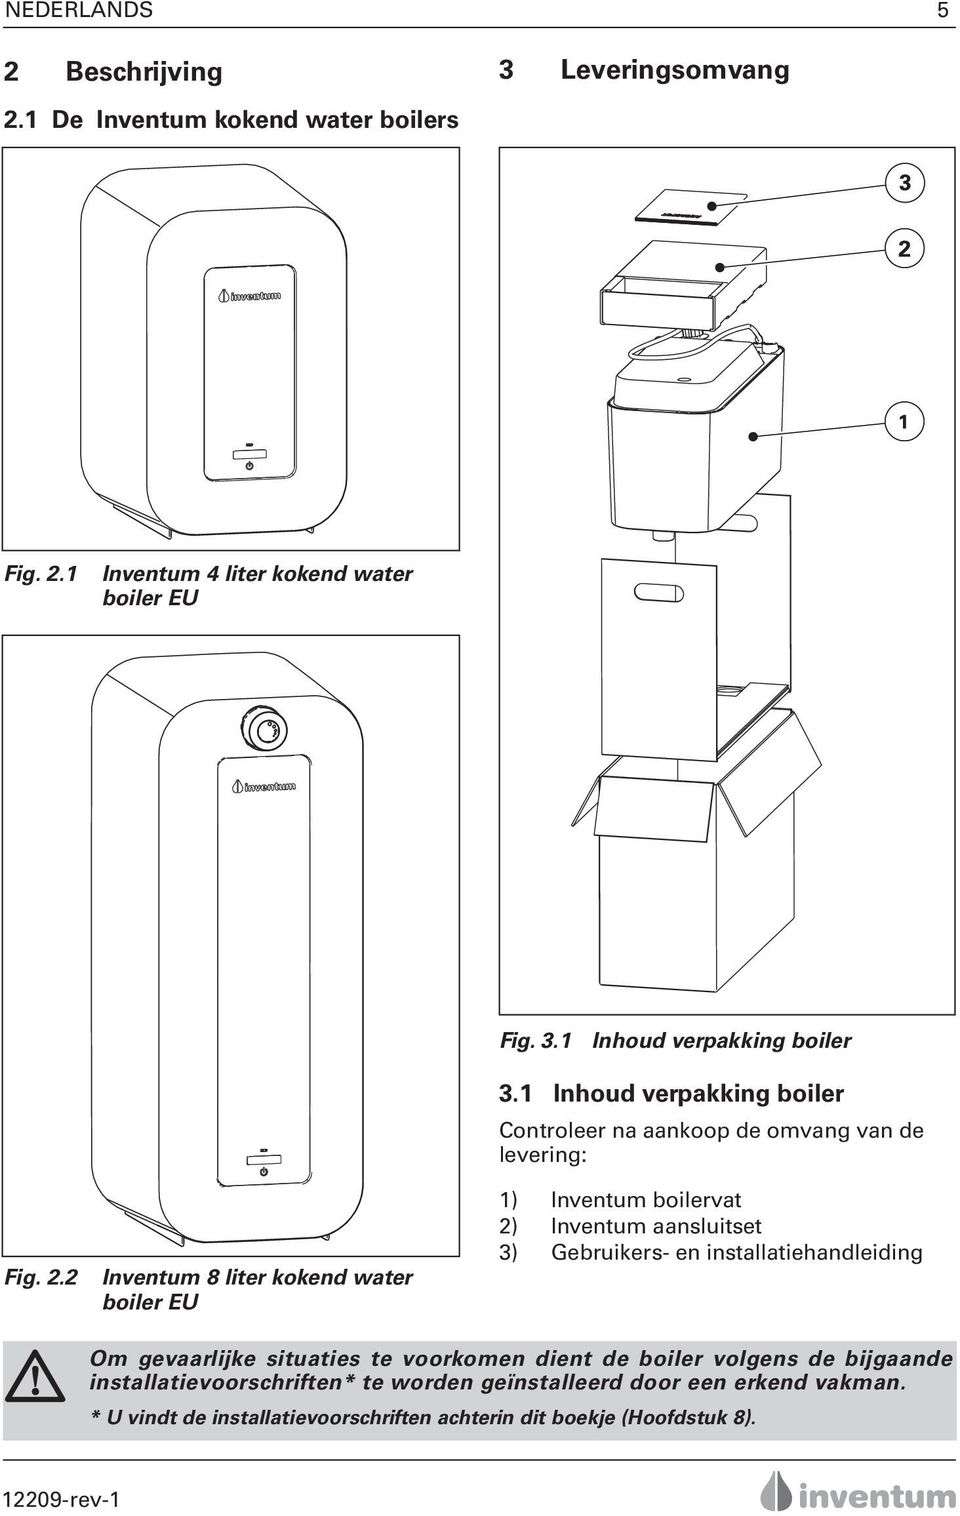 1 Inhoud verpakking boiler Controleer na aankoop de omvang van de levering: 1) Inventum boilervat 2) Inventum aansluitset 3) Gebruikers- en